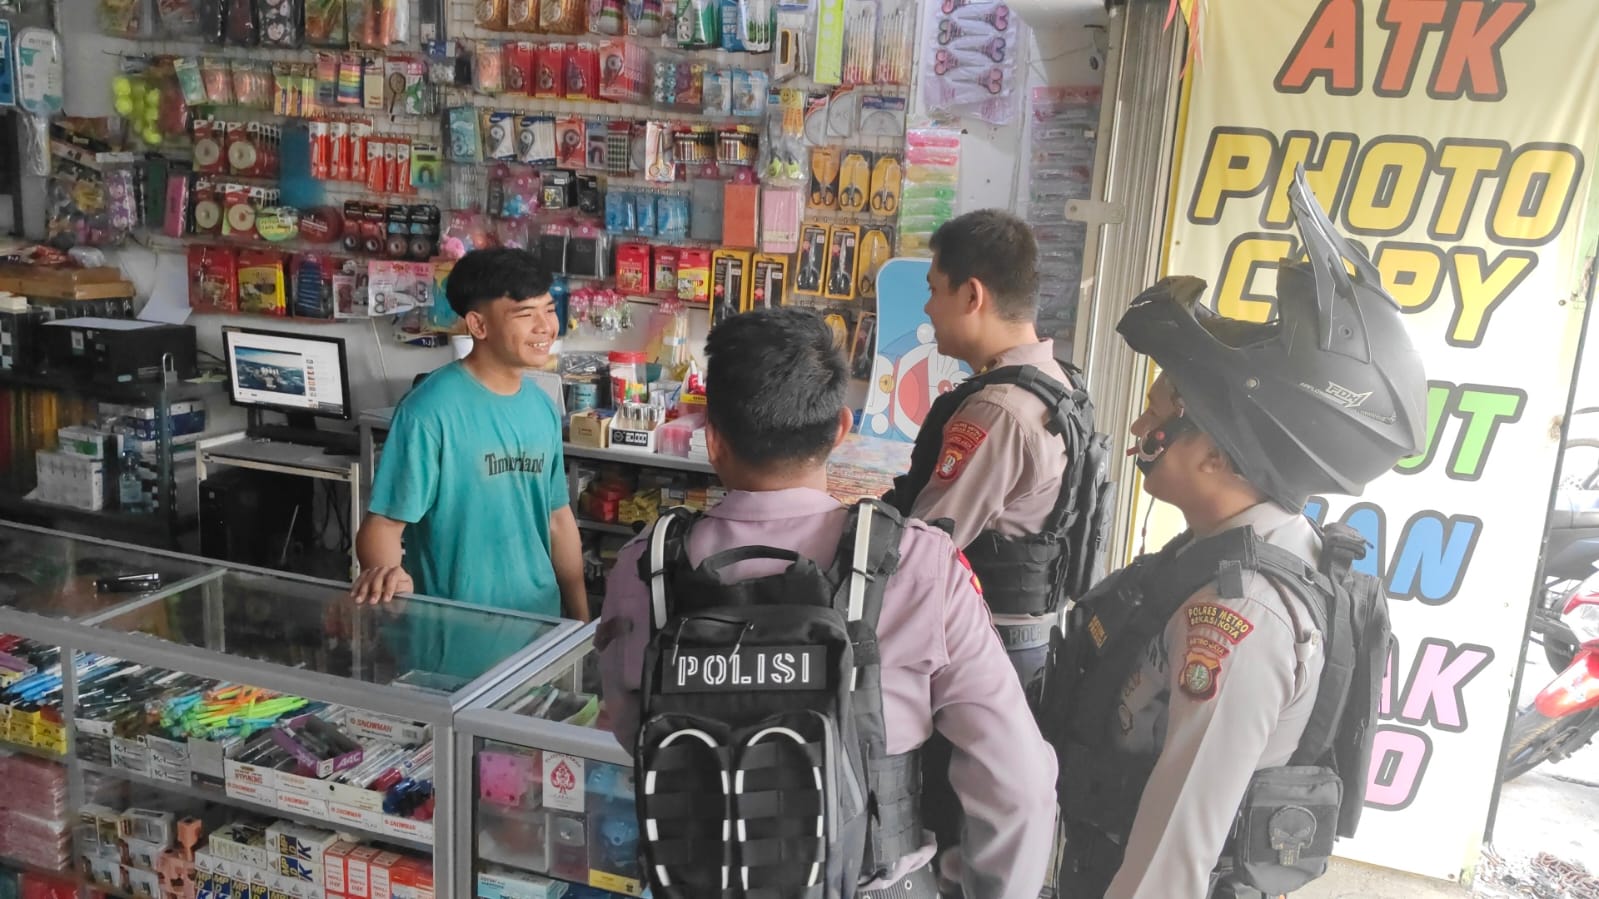 Viral Anggota Ormas Diduga Meminta Jatah Uang ke Kios Fotocopy di Bekasi, Polisi Gerak Cepat Mencari Pelaku